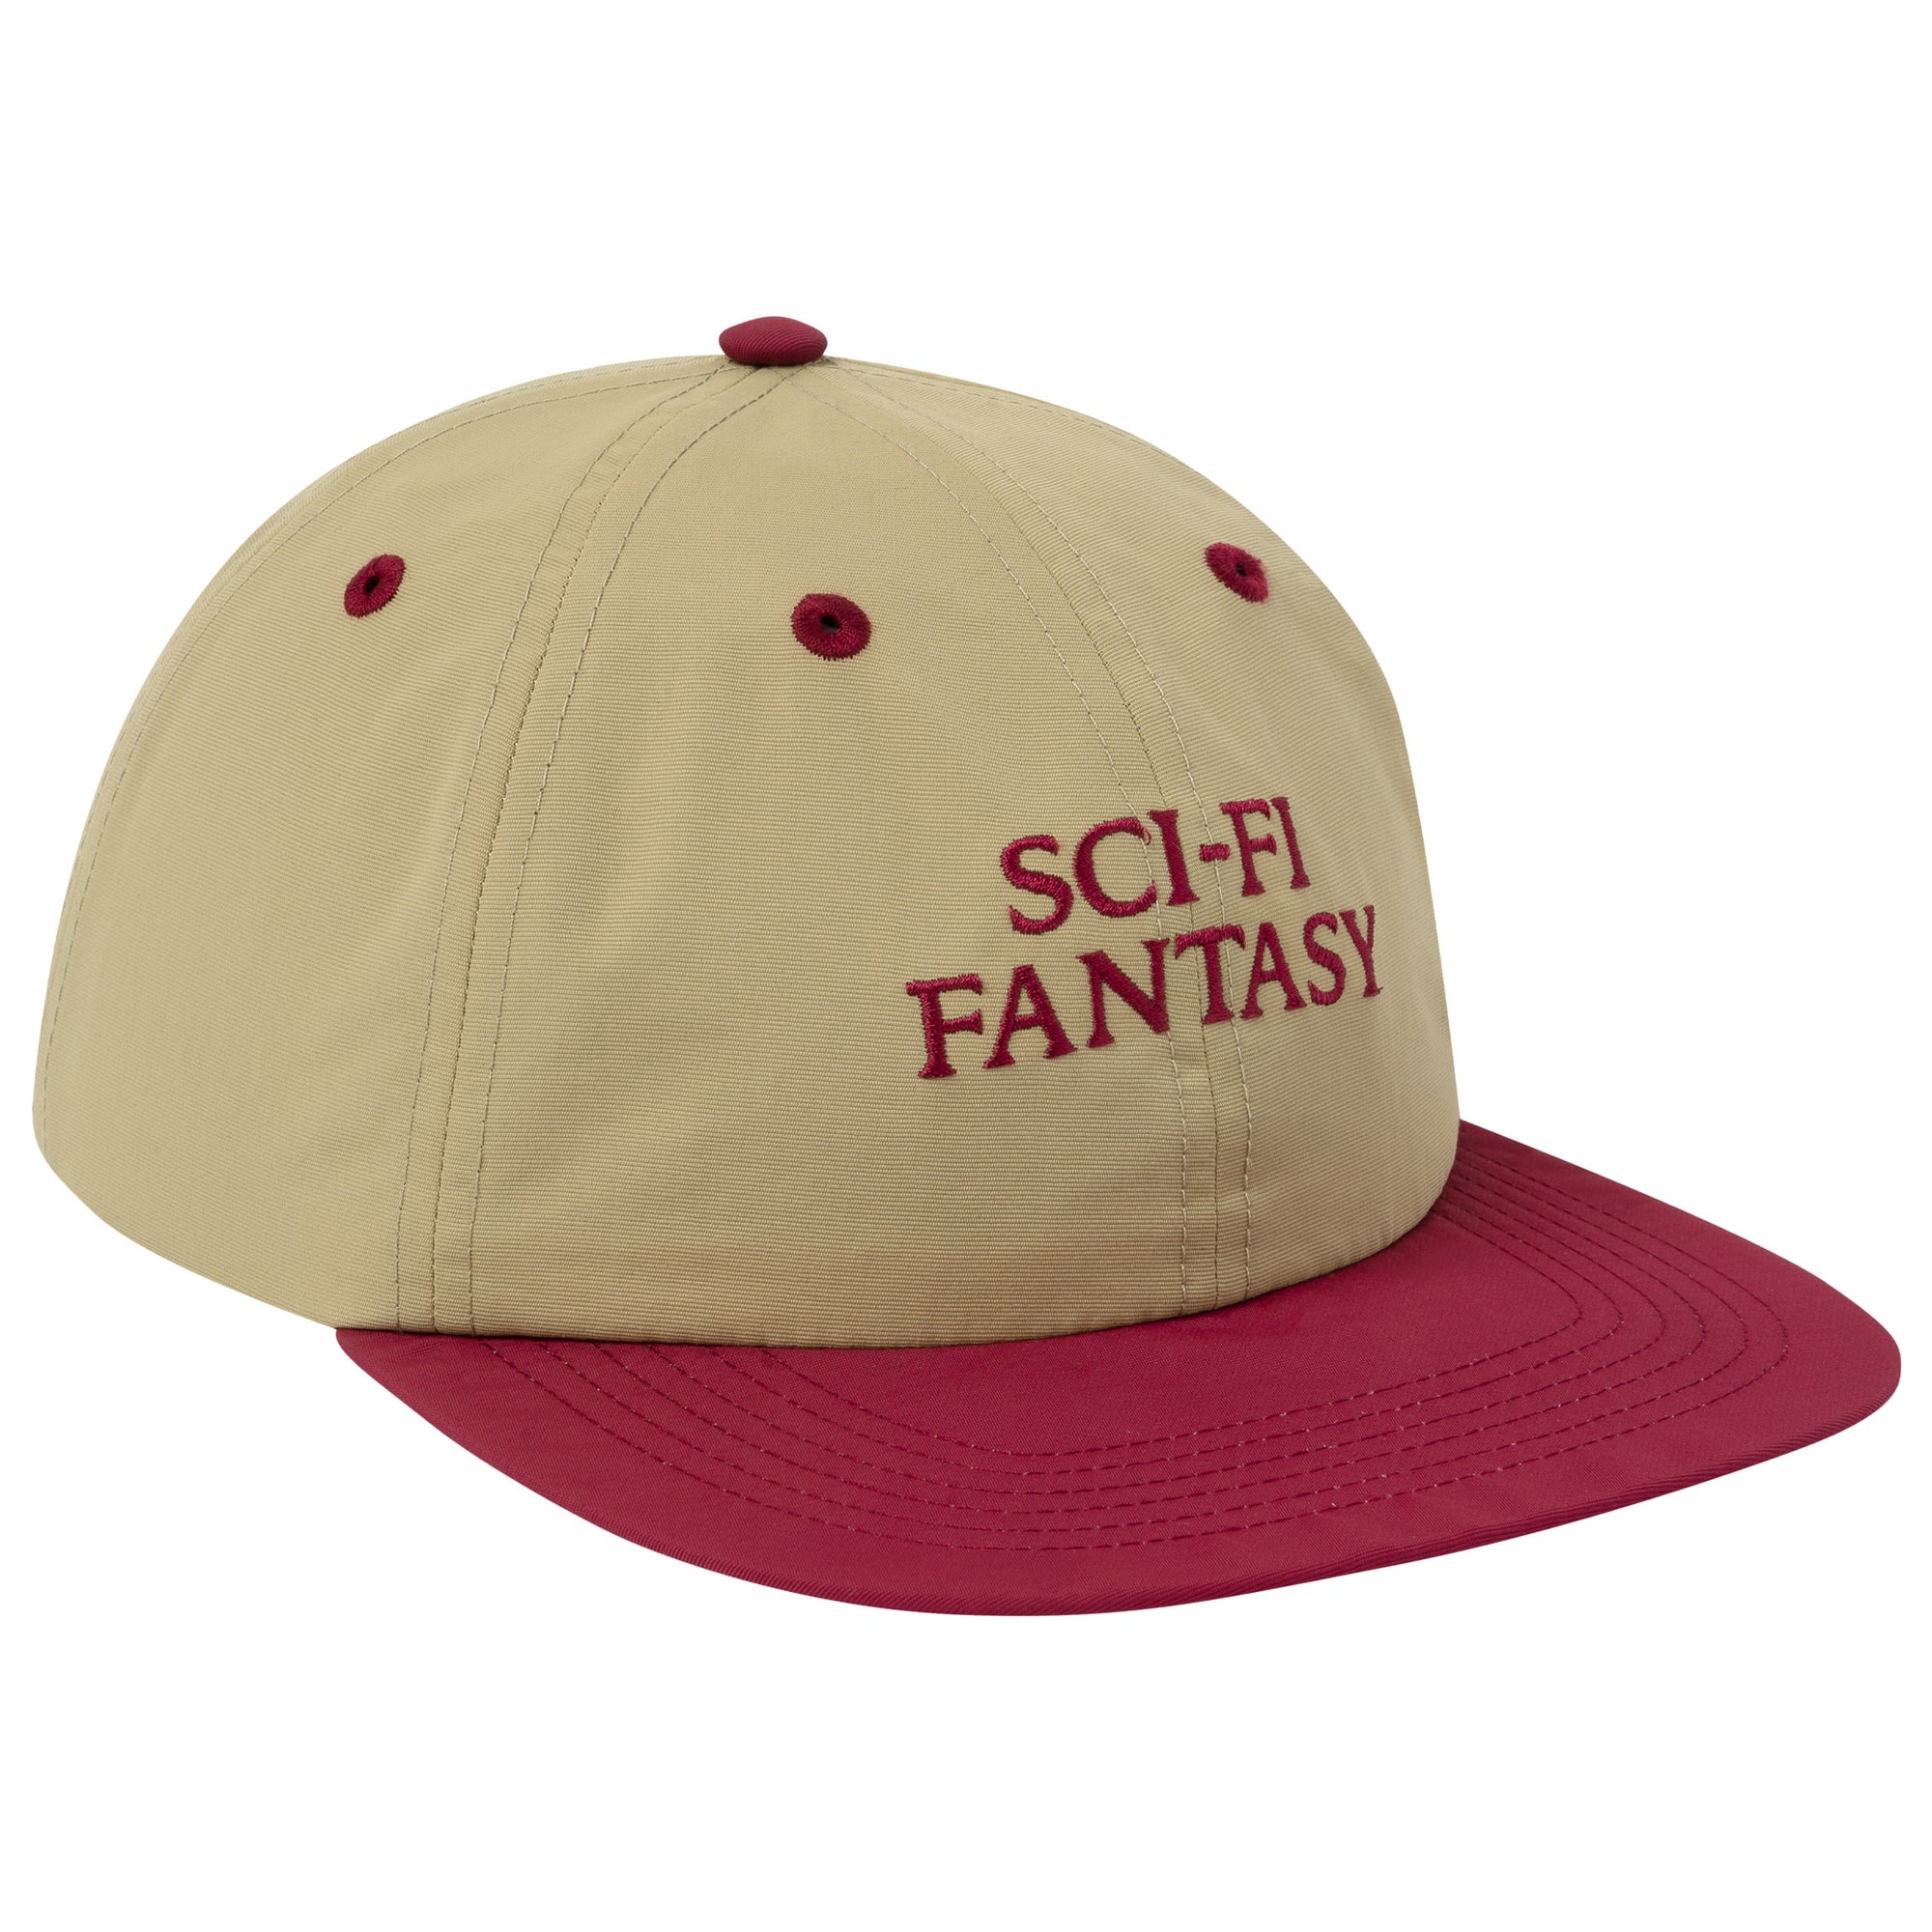 Sci-i Fantasy Nylon Logo Hat Ember